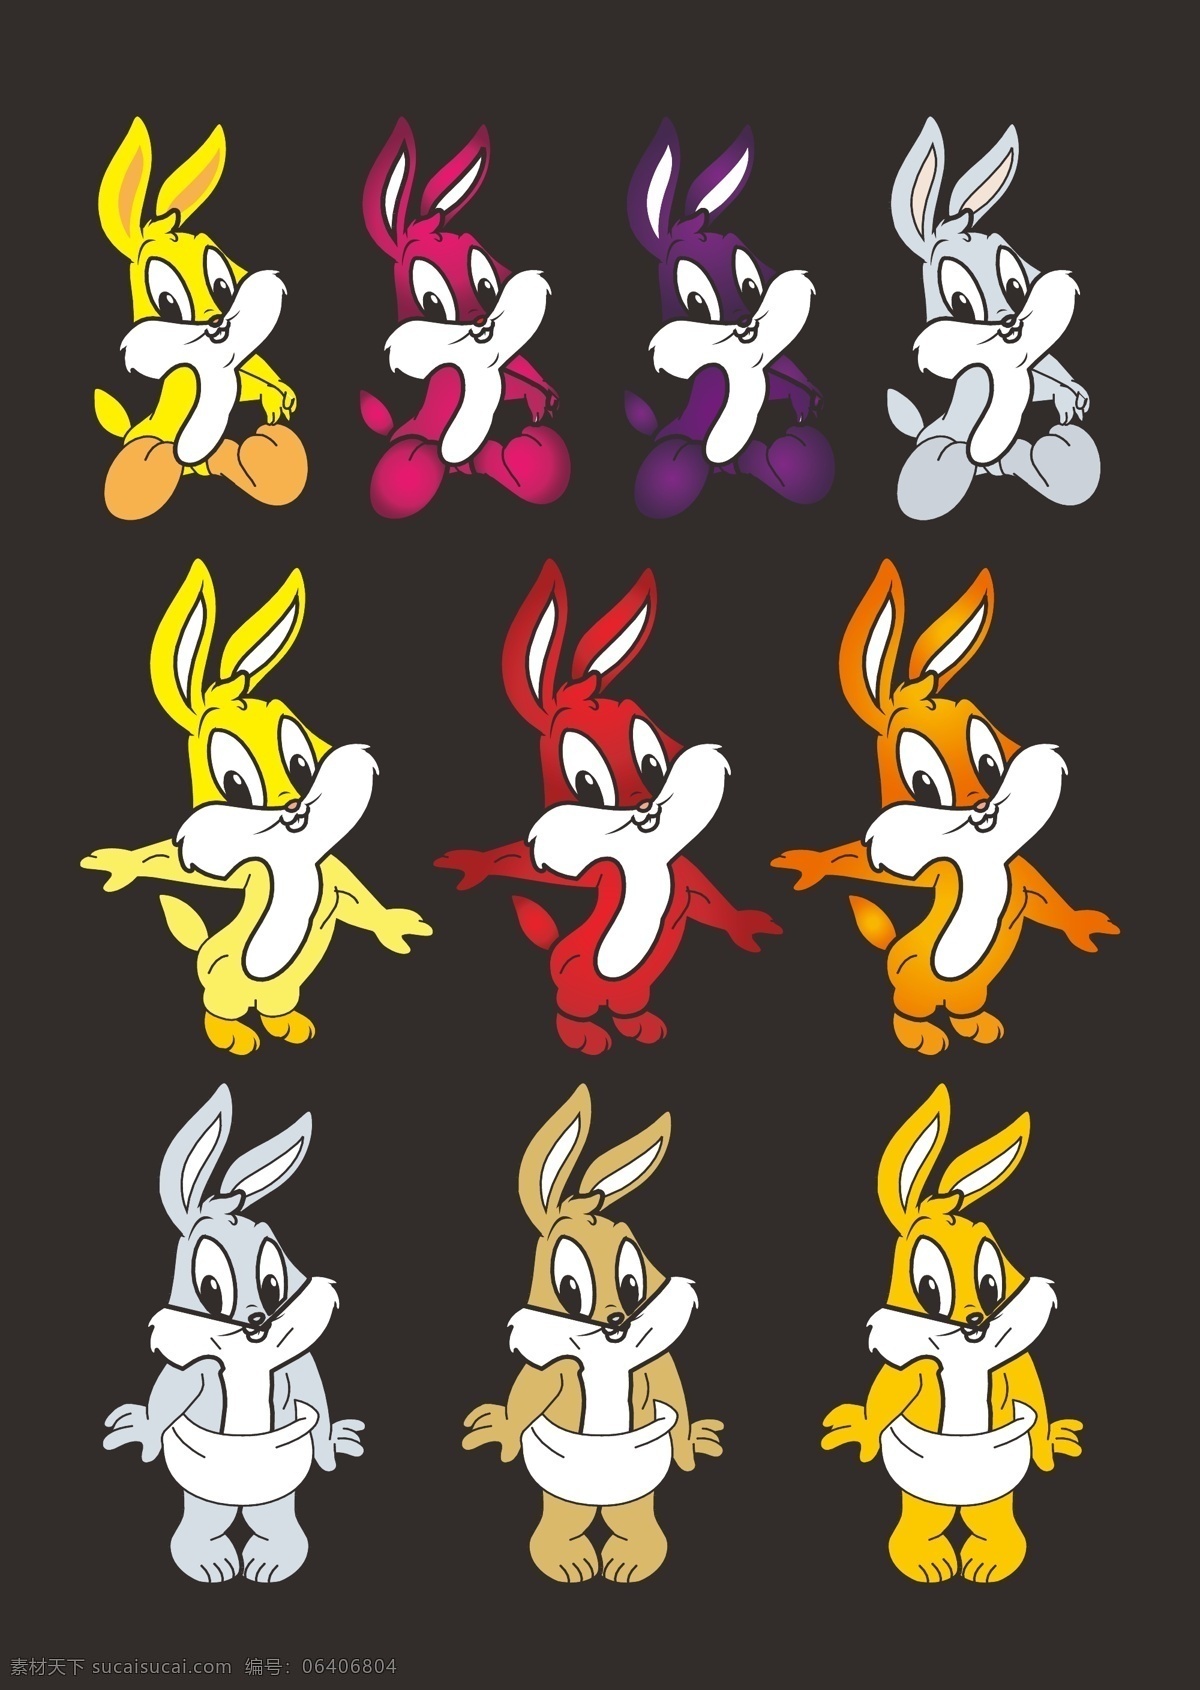 节日可爱兔子 节日素材 卡通 卡通动物 卡通兔子 可爱 利是封素材 矢量兔子 兔子 兔子卡通 兔子素材 各种 造型 兔子图片 兔子美女 2011年 新年素材 运物 2015 新年 元旦 春节 元宵